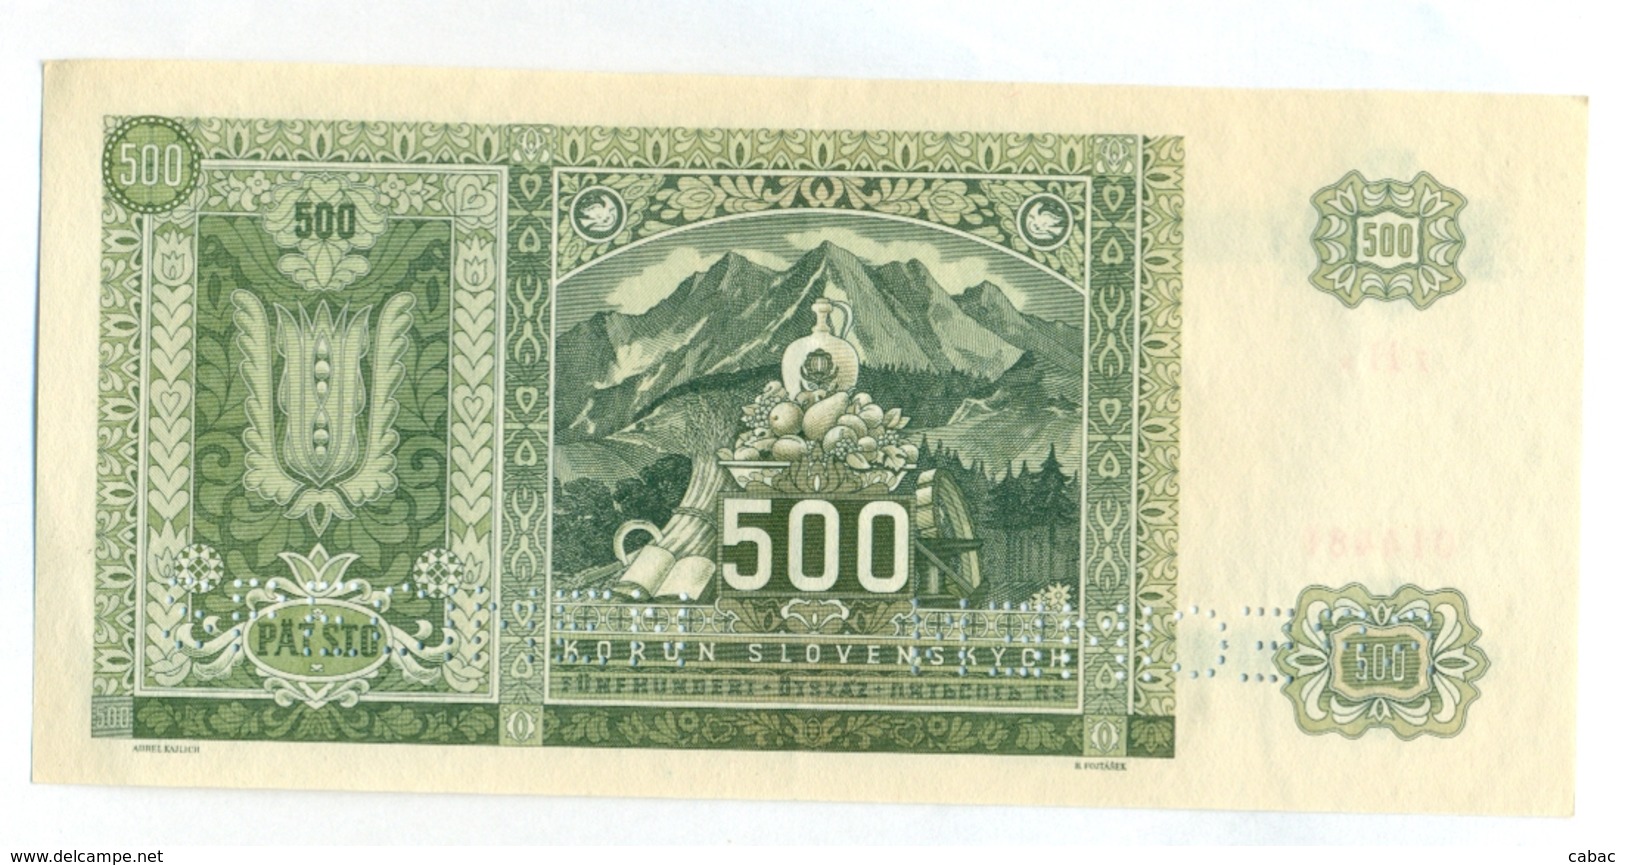 Slovakia 500 Korun 1941 SPECIMEN, Slovaquie,Slovacchia, Slowakei, Patsto Korun, 7 H A + Stamp, RARE - Slovaquie